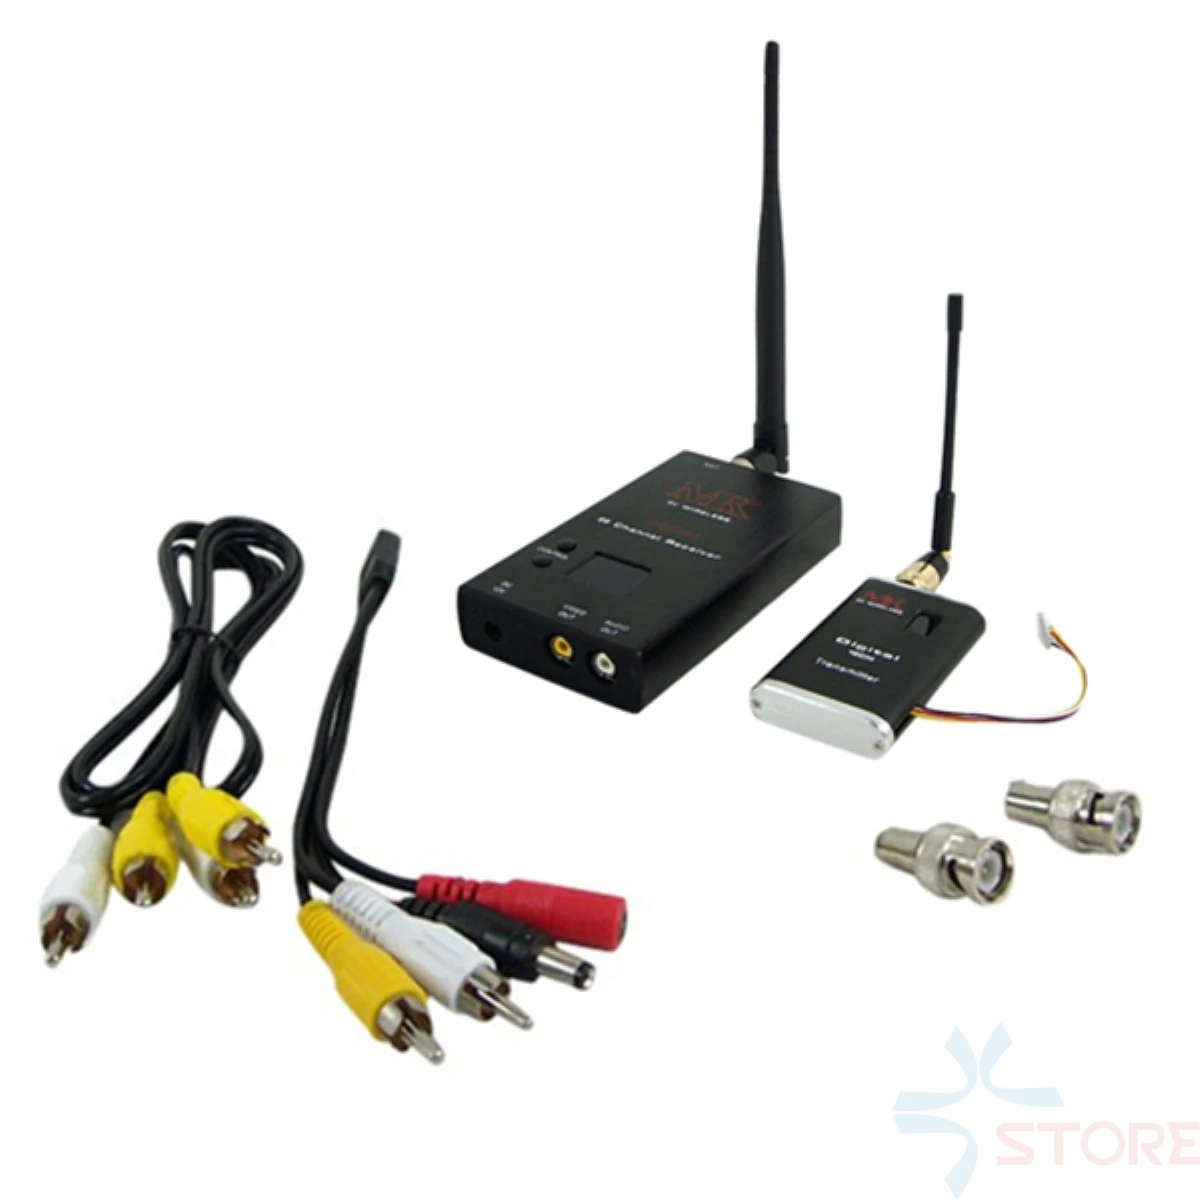 MK 1.2Ghz Hz 15CH 2W 2000mW FPV 1-5km distanza Wireless Audio Video trasmettitore CCTV ricevitore 1.2G 2W per fotografia FPV